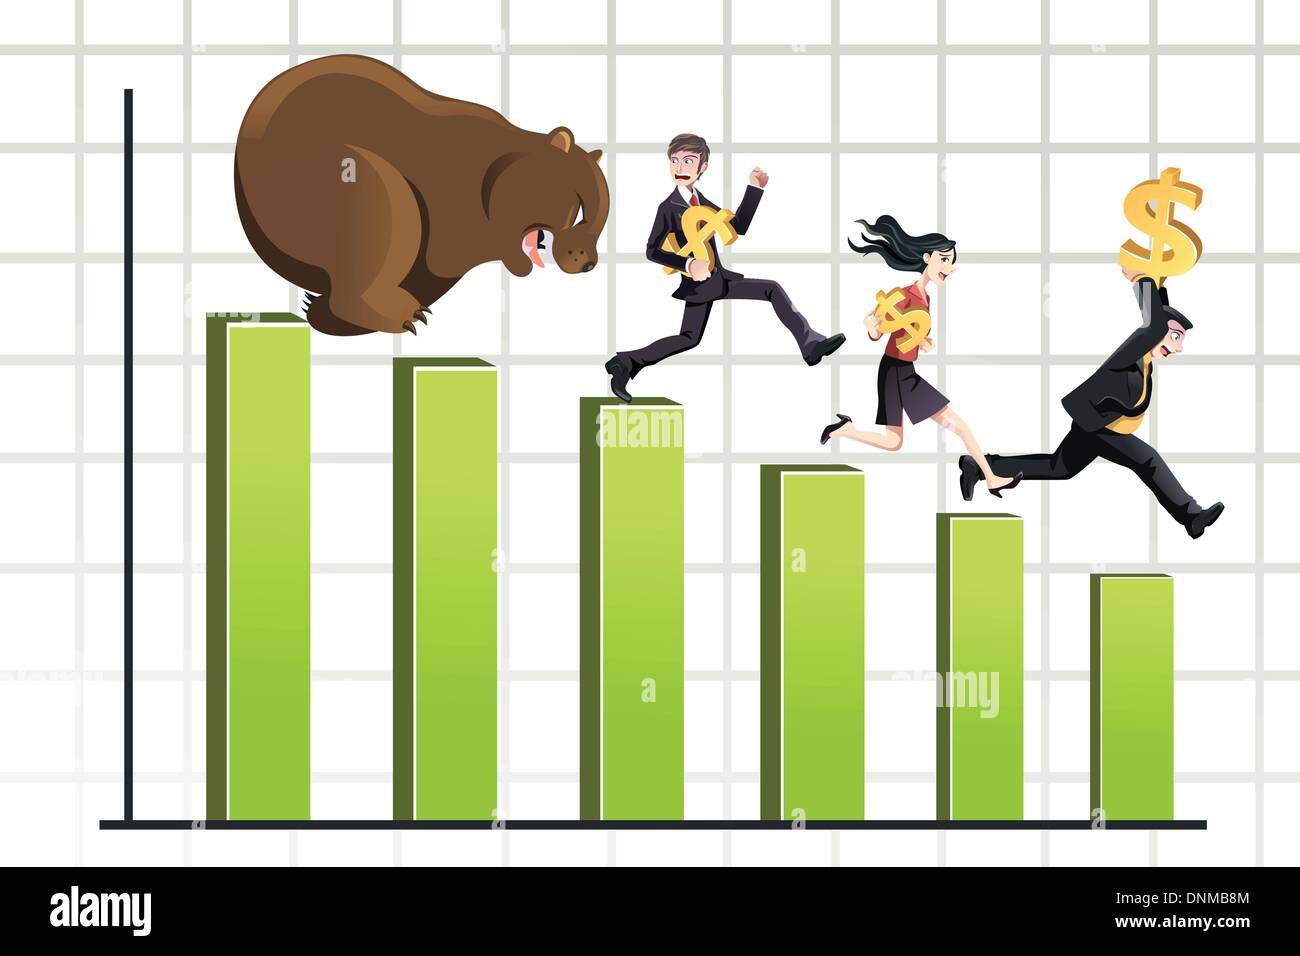 Eine Vektor-Illustration eines Bären jagen das Diagramm Geschäftsleute eignet sich für Bär Marktkonzept Stock Vektor